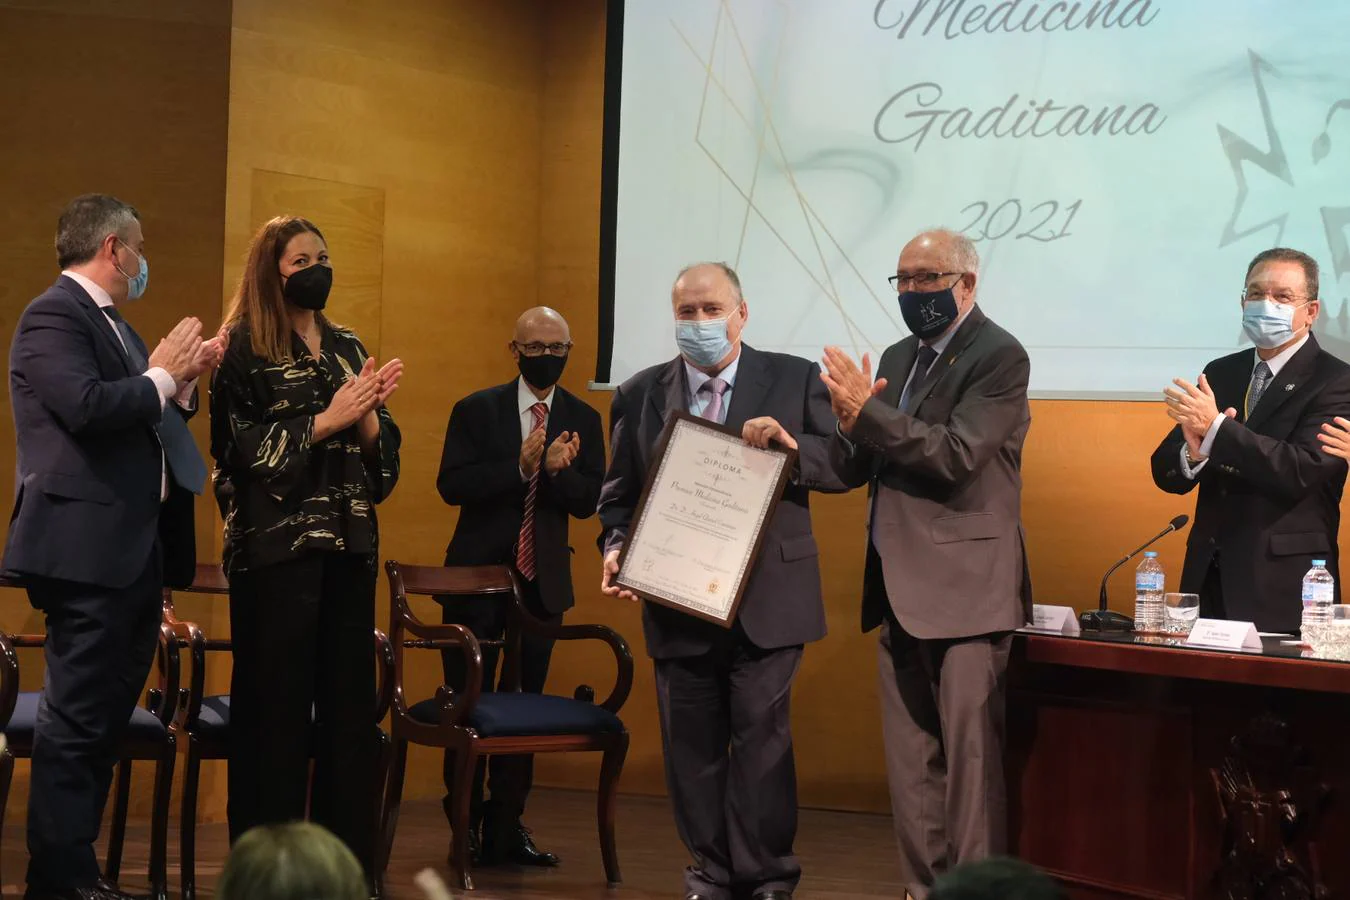 Fotos: Premios Medicina Gaditana 2021